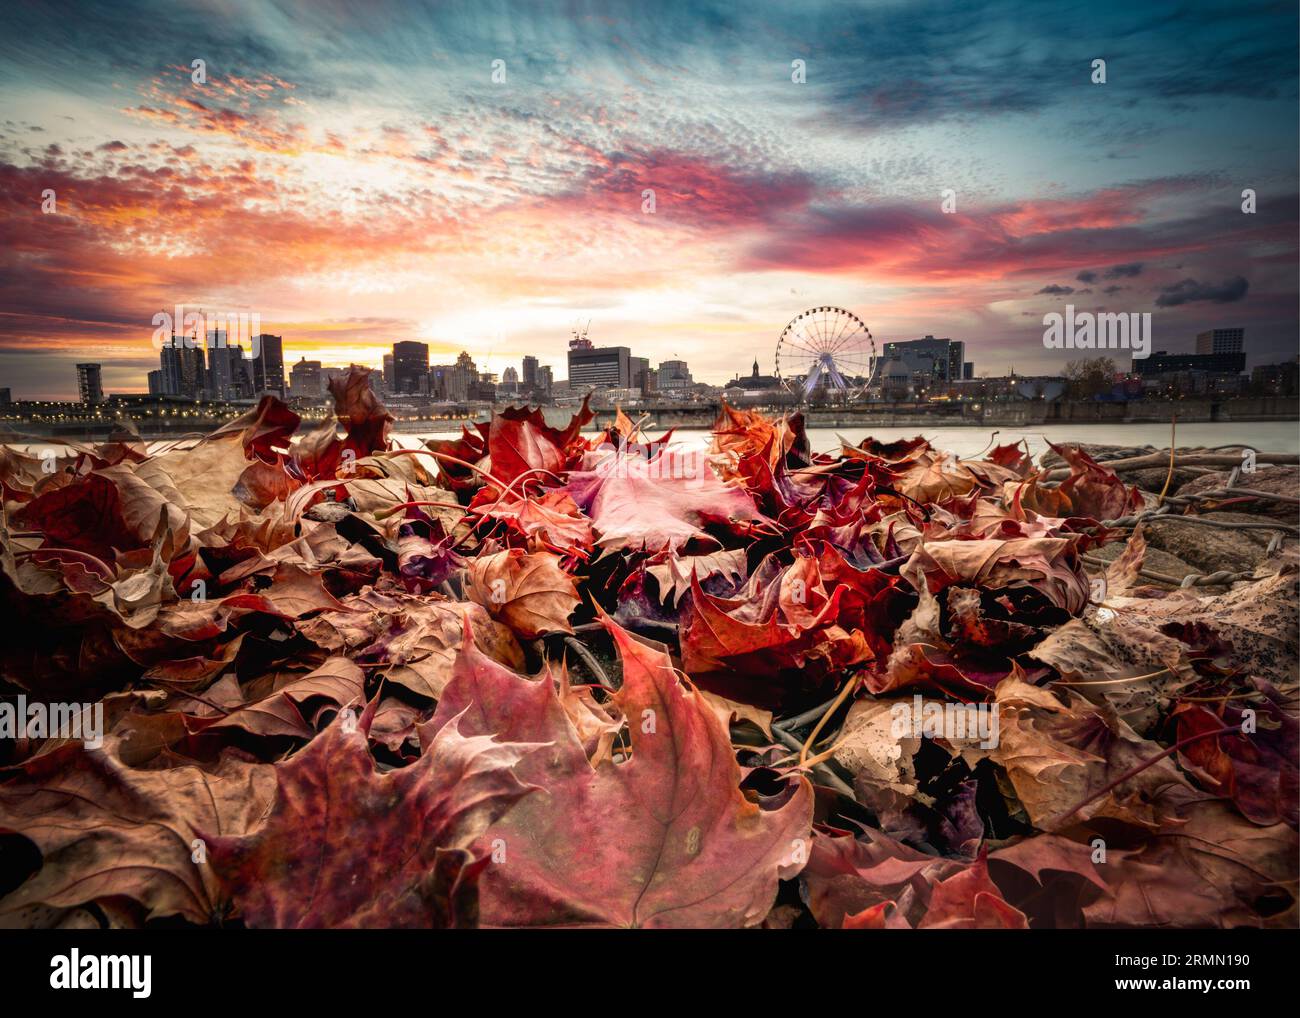 Feuilles d'automne colorées tombées avec la ville de Montréal Canada Skyline vue en arrière-plan Banque D'Images